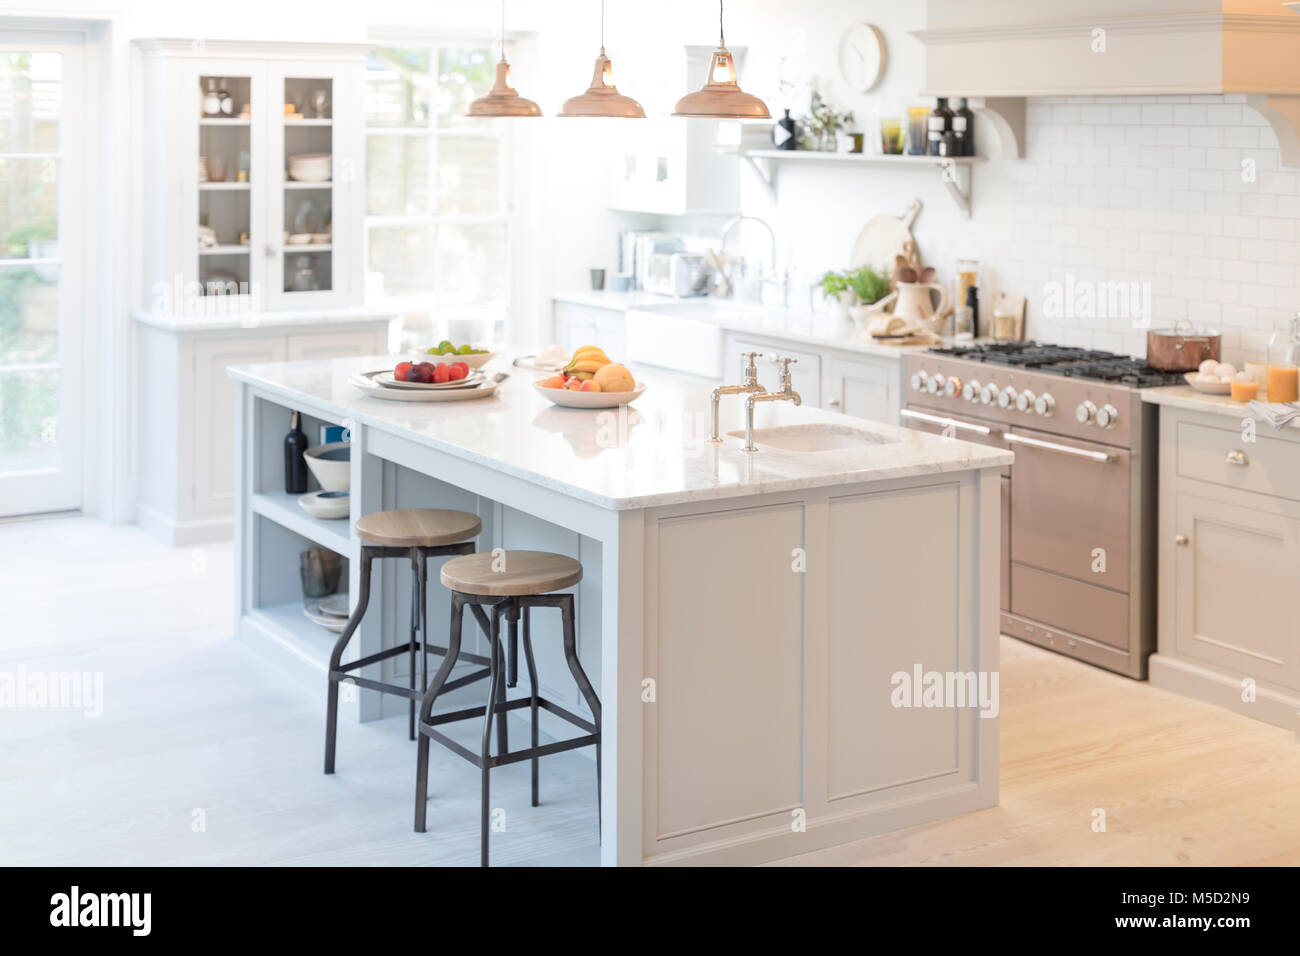 Luxury home showcase kitchen Stock Photo